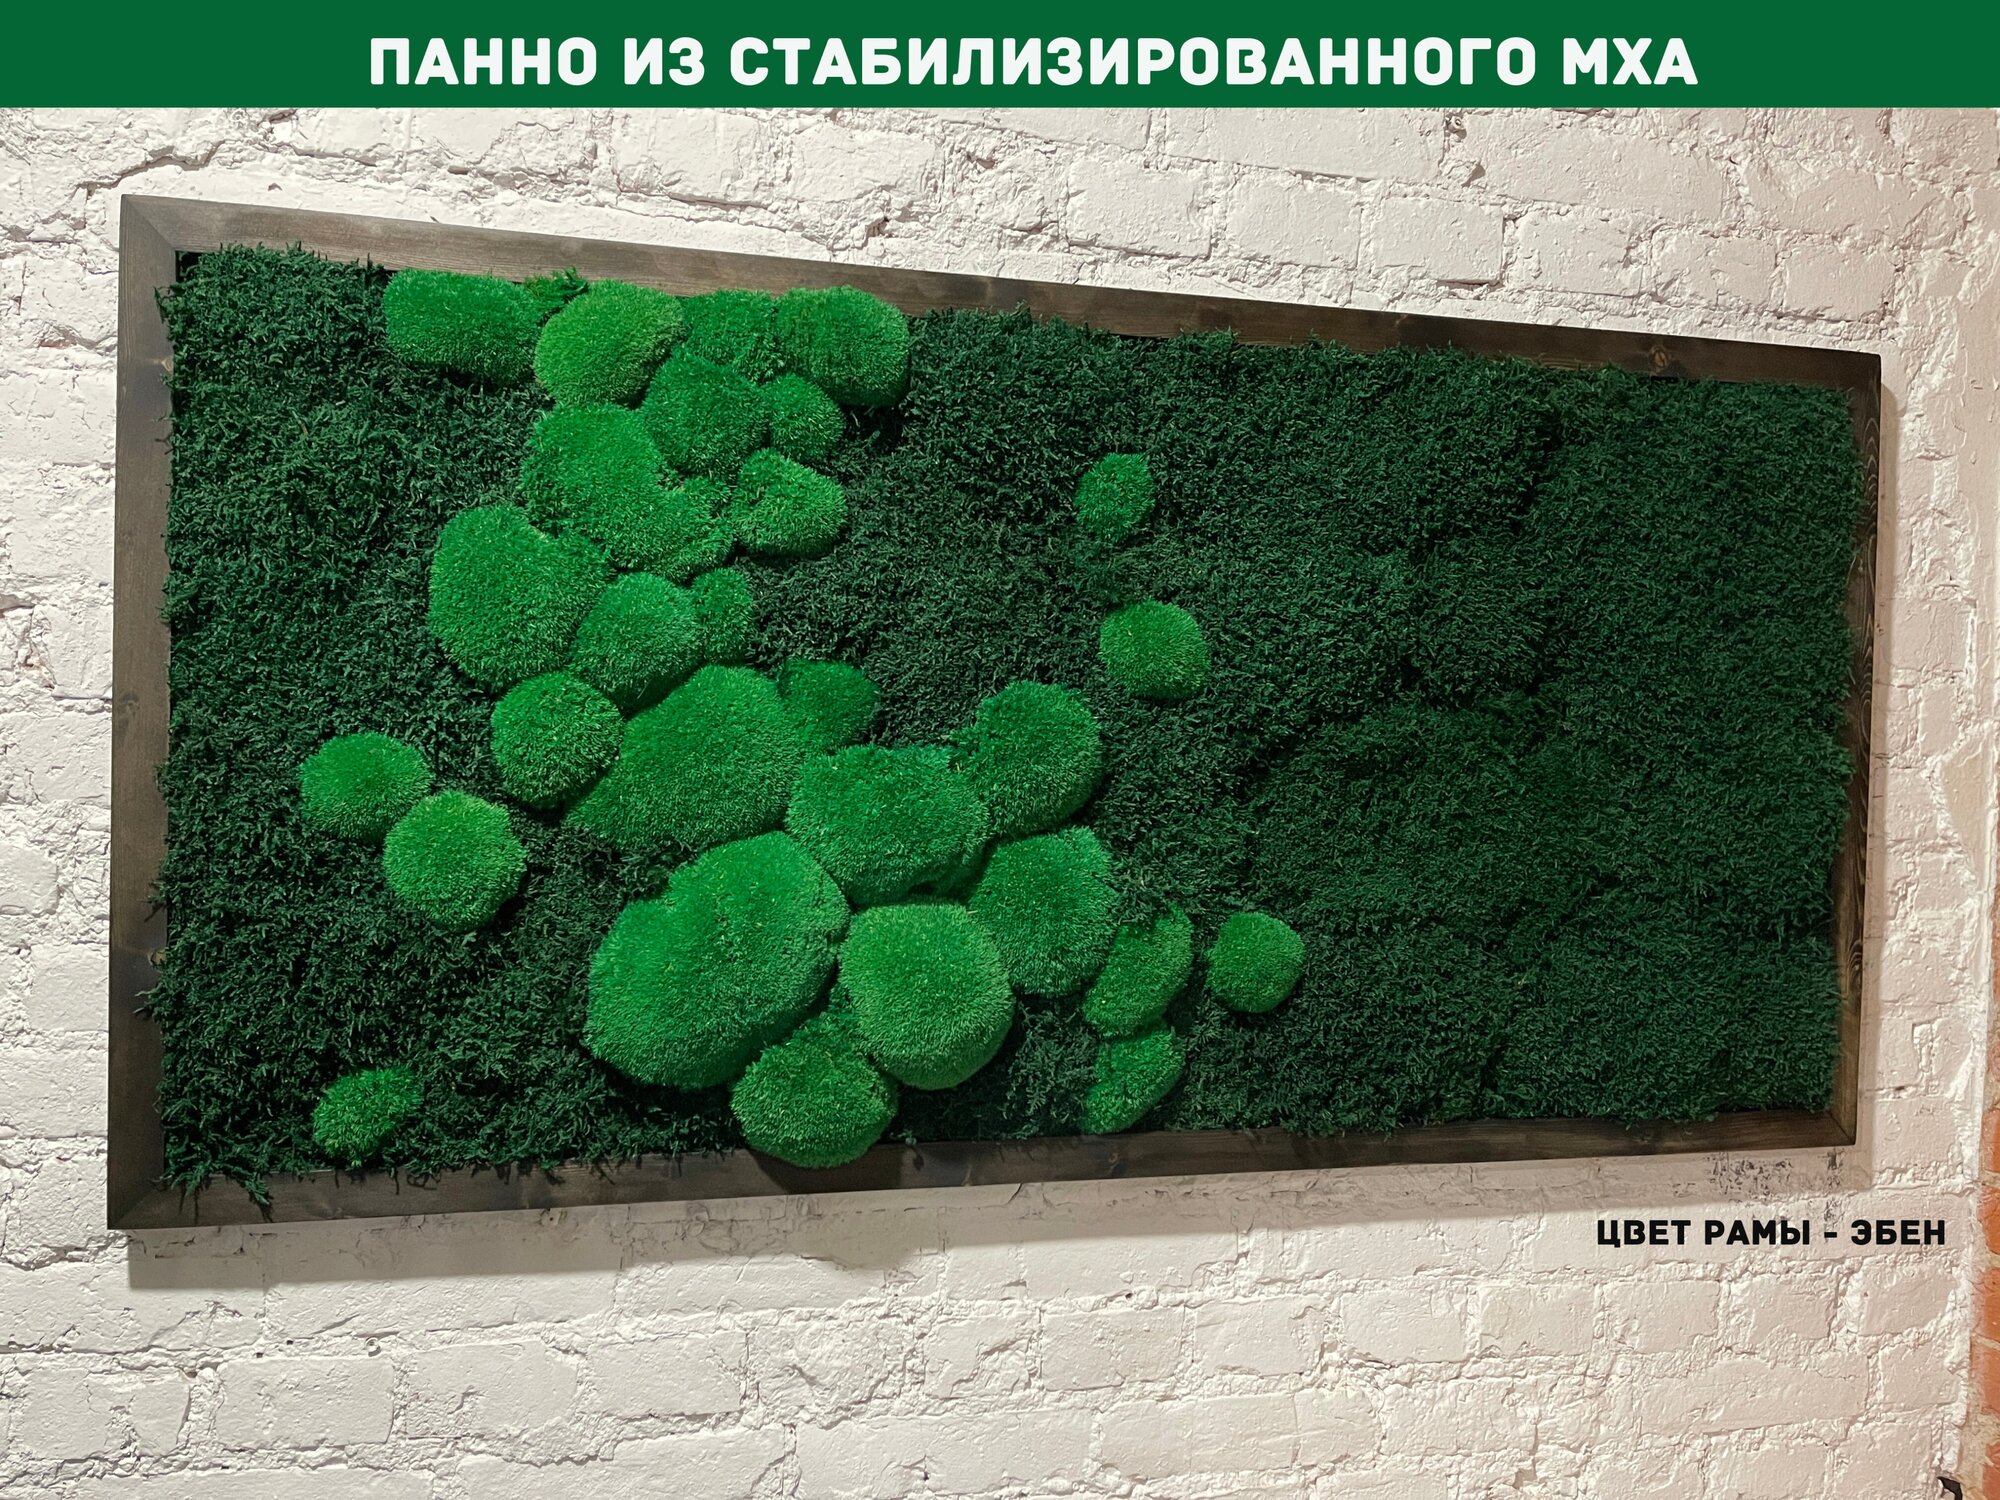 Панно из стабилизированно мха GardenGo в рамке цвета эбен, 50х100 см, цвет мха зеленый